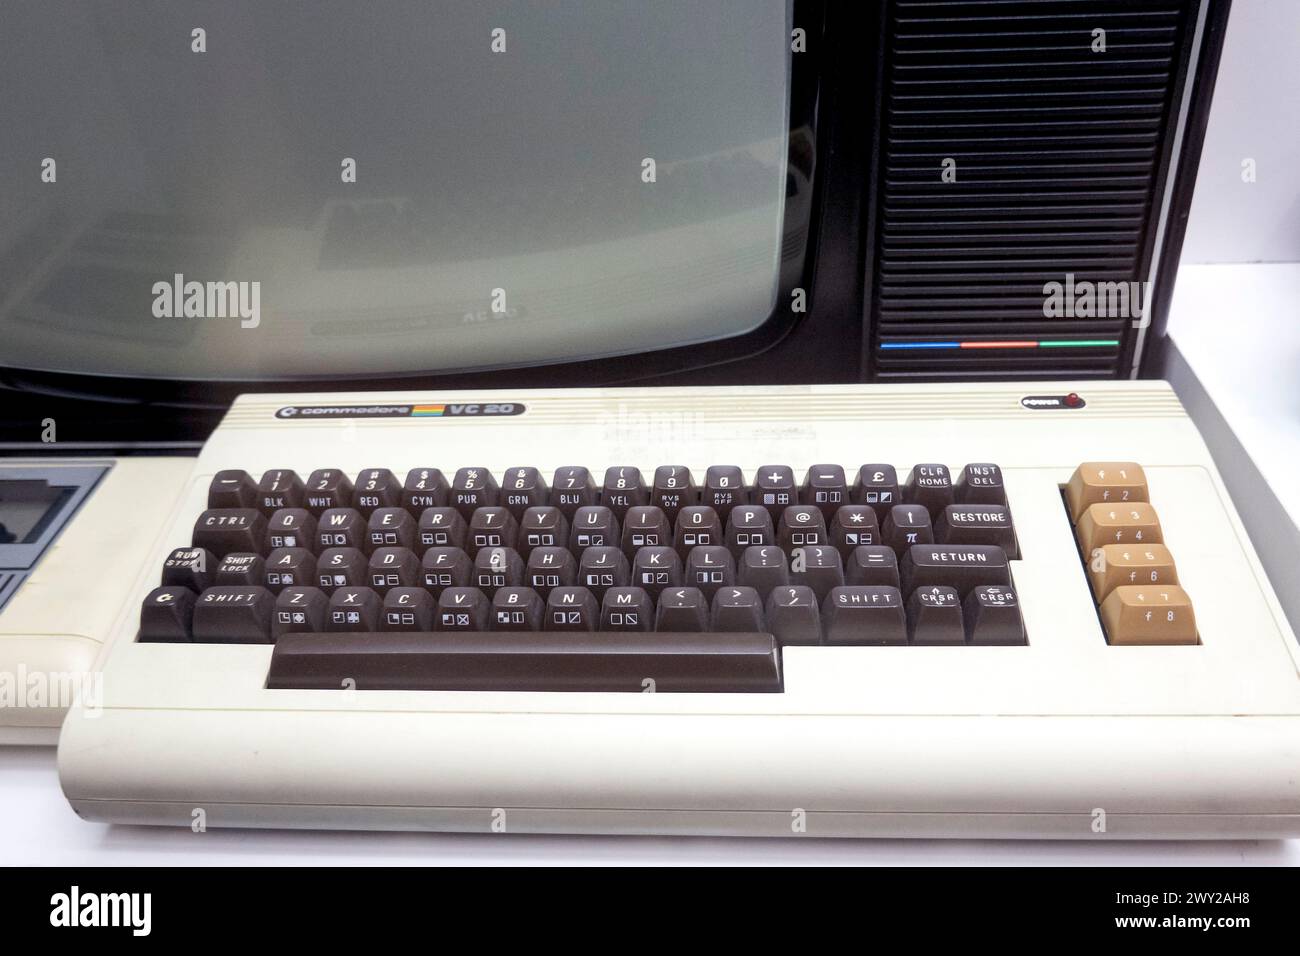 Commodor VIC 20 computer Keyboard 1980 Stock Photo